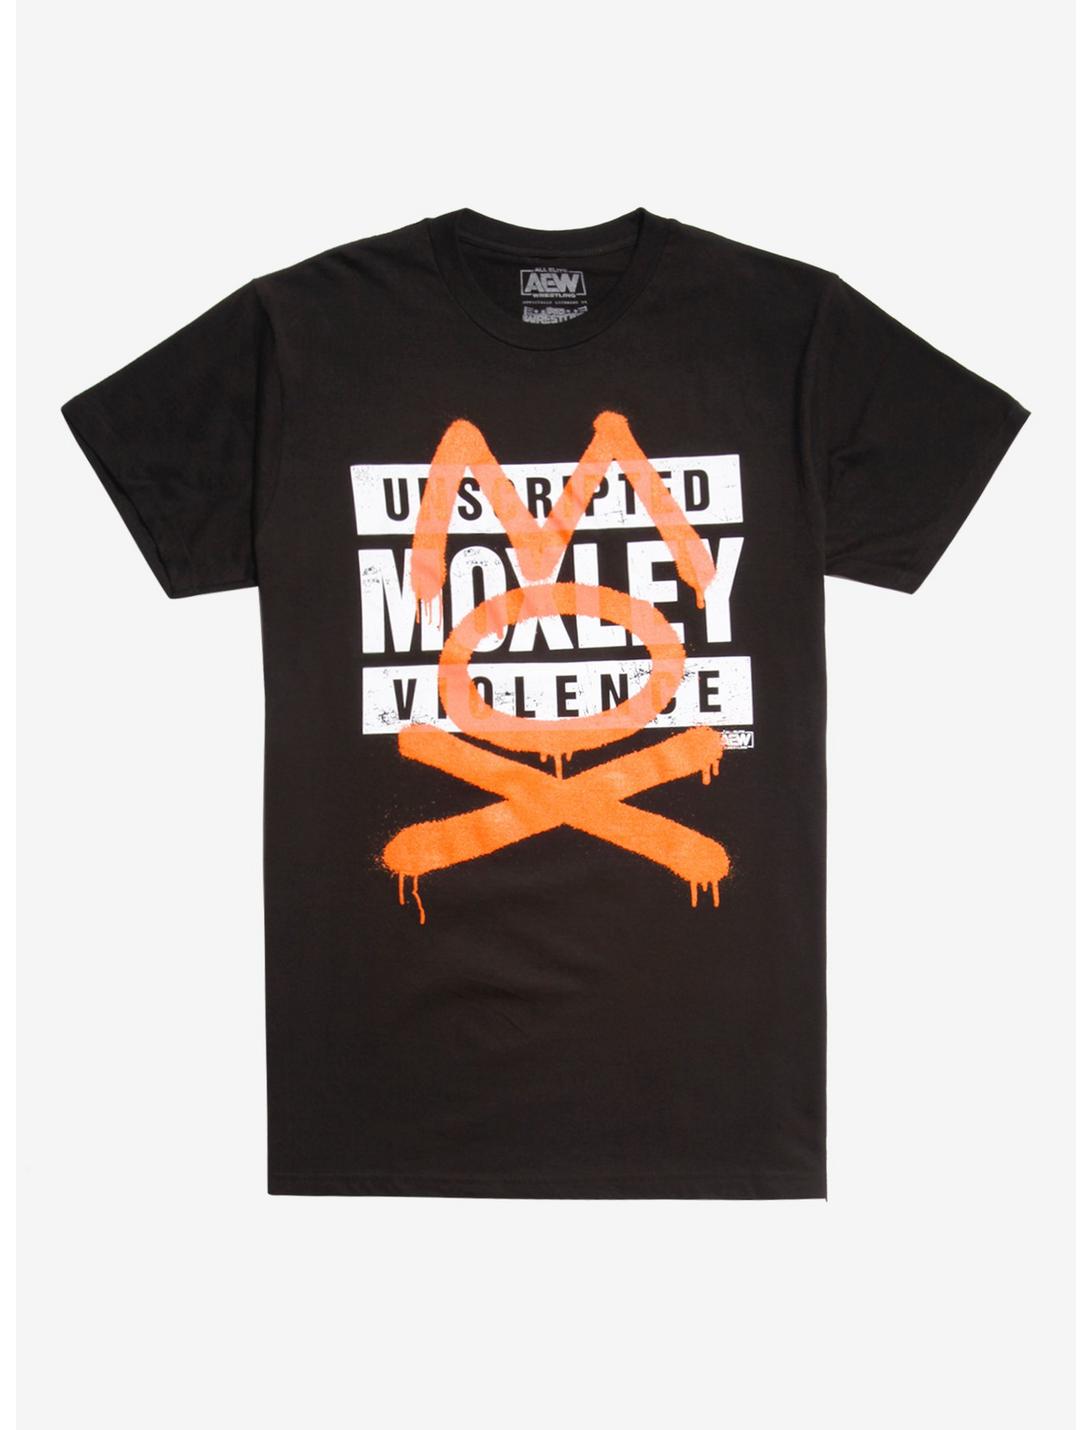 All Elite Wrestling Unscripted Moxley Violence T-Shirt, BLACK, hi-res